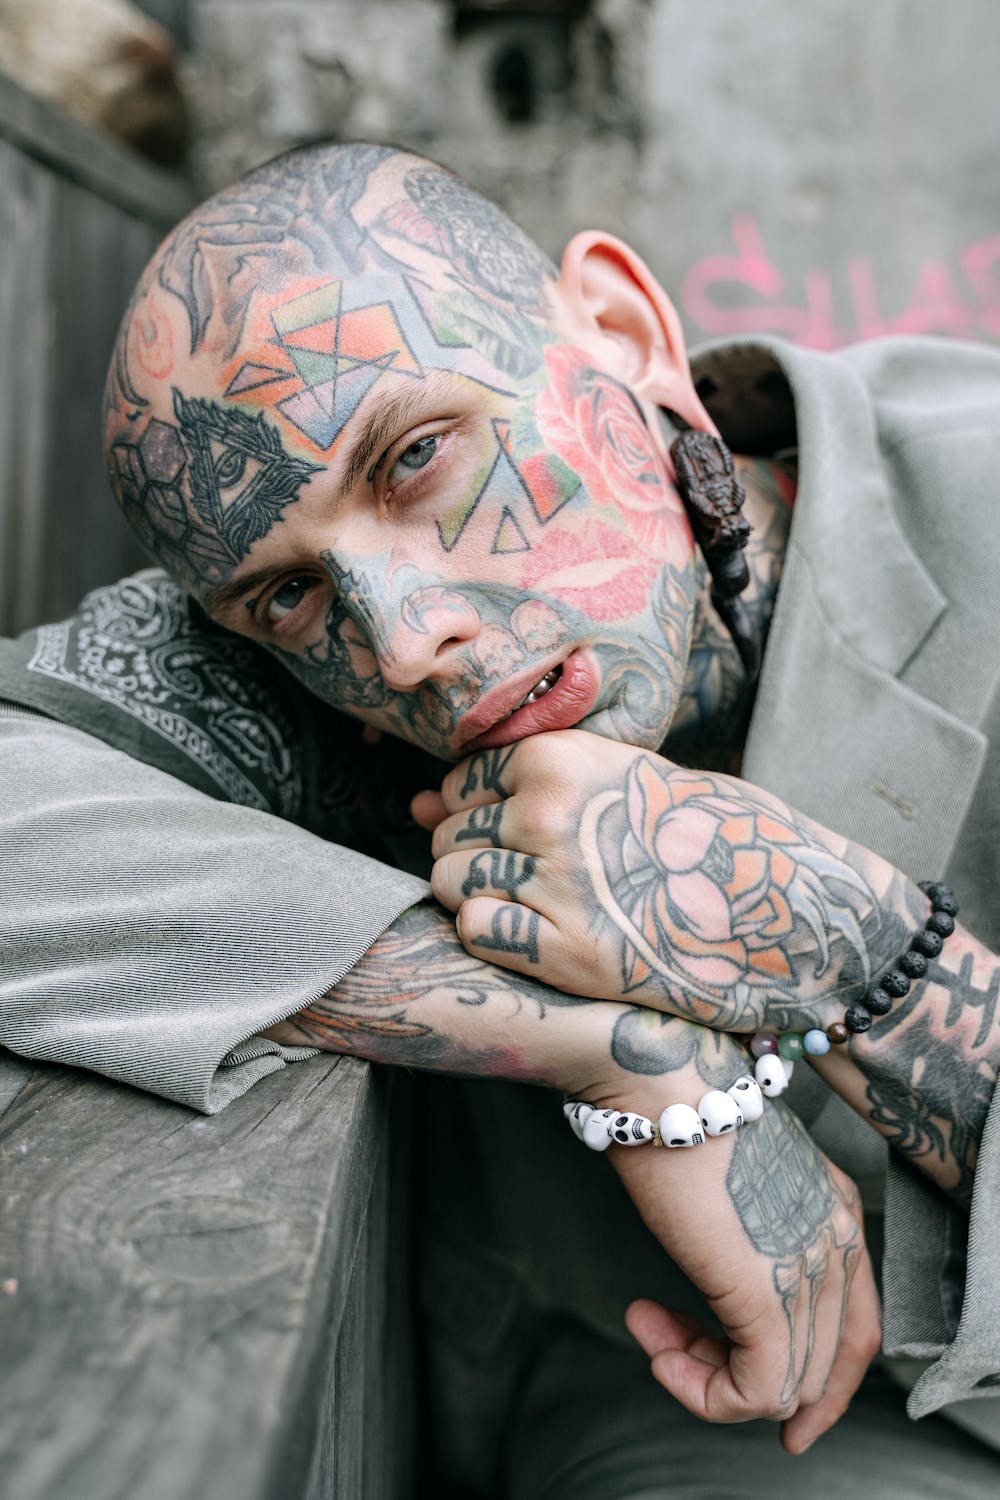 Comment la société veut que les hommes habillent les piercings et les tatouages